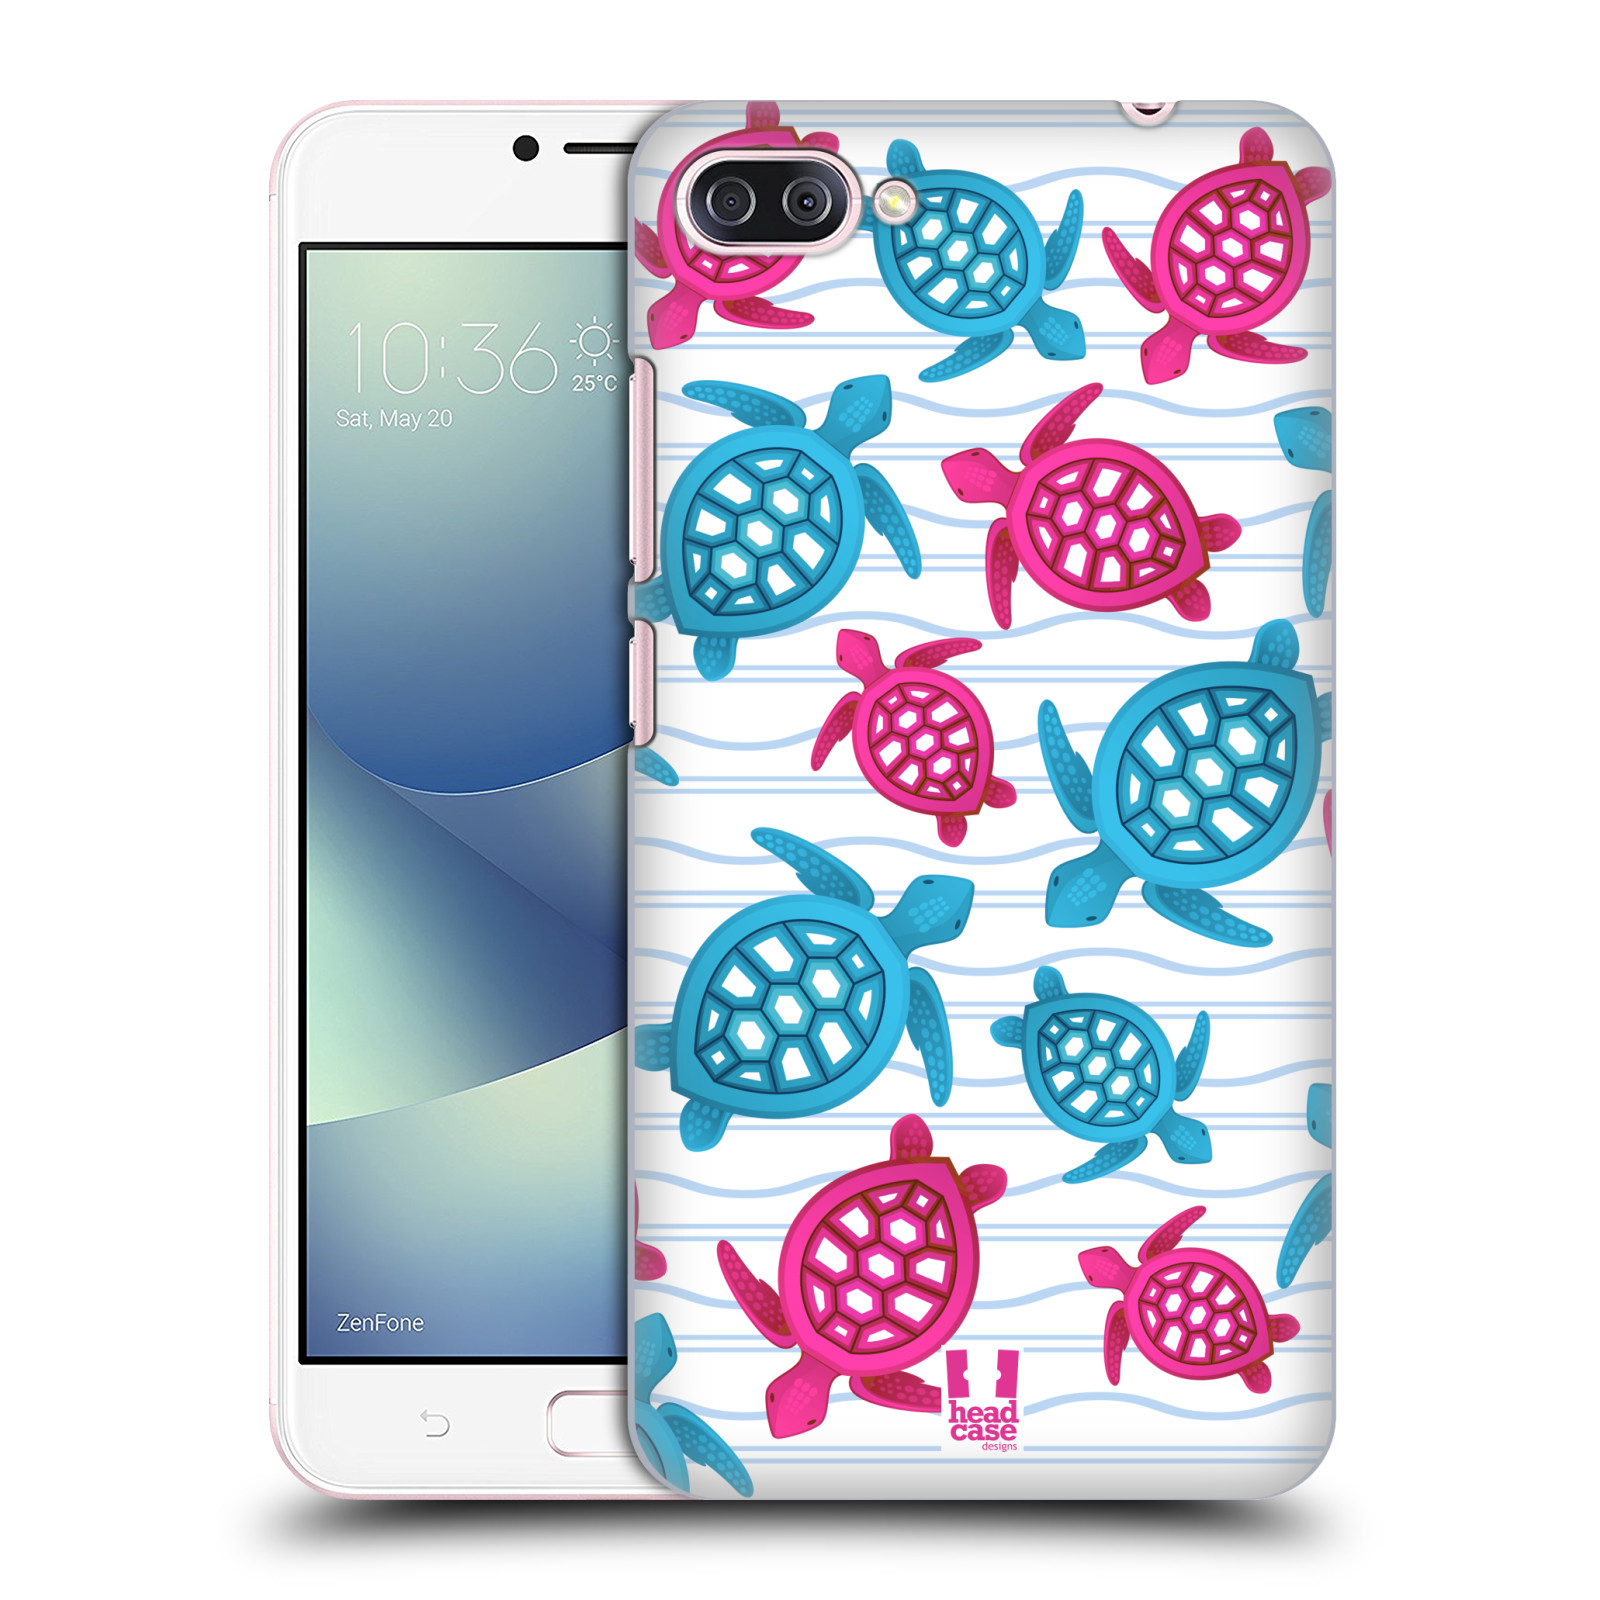 Zadní obal pro mobil Asus Zenfone 4 MAX / 4 MAX PRO (ZC554KL) - HEAD CASE - kreslený mořský vzor želvičky